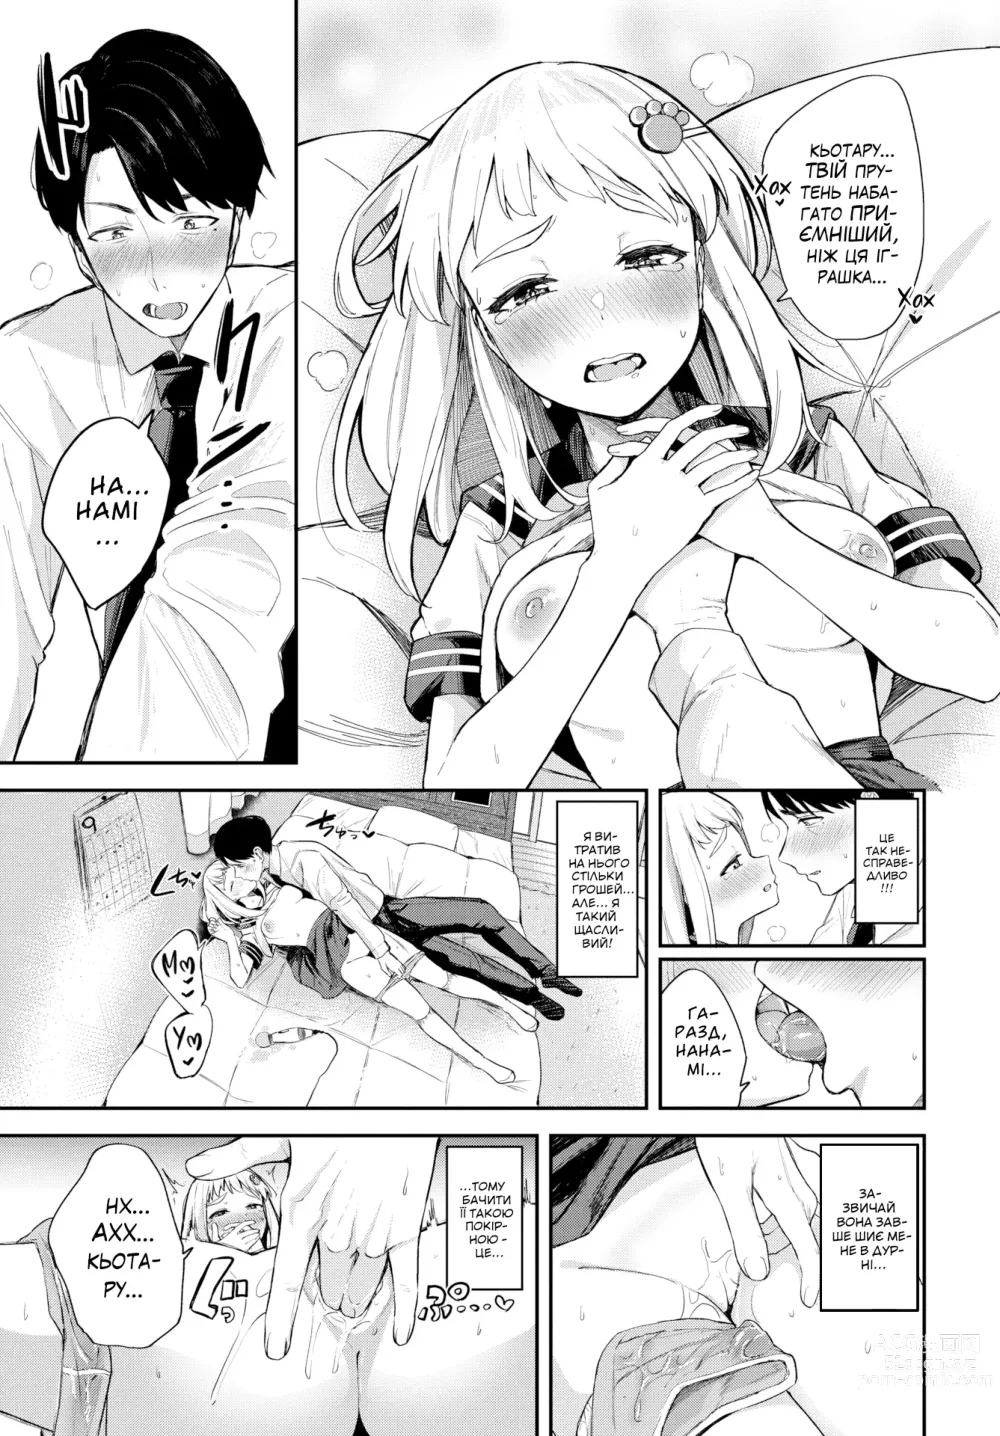 Page 9 of manga [Тоджьо Цукуші] Мій солодкий диявол [Без цензури]  LOLICORNUS (decensored)